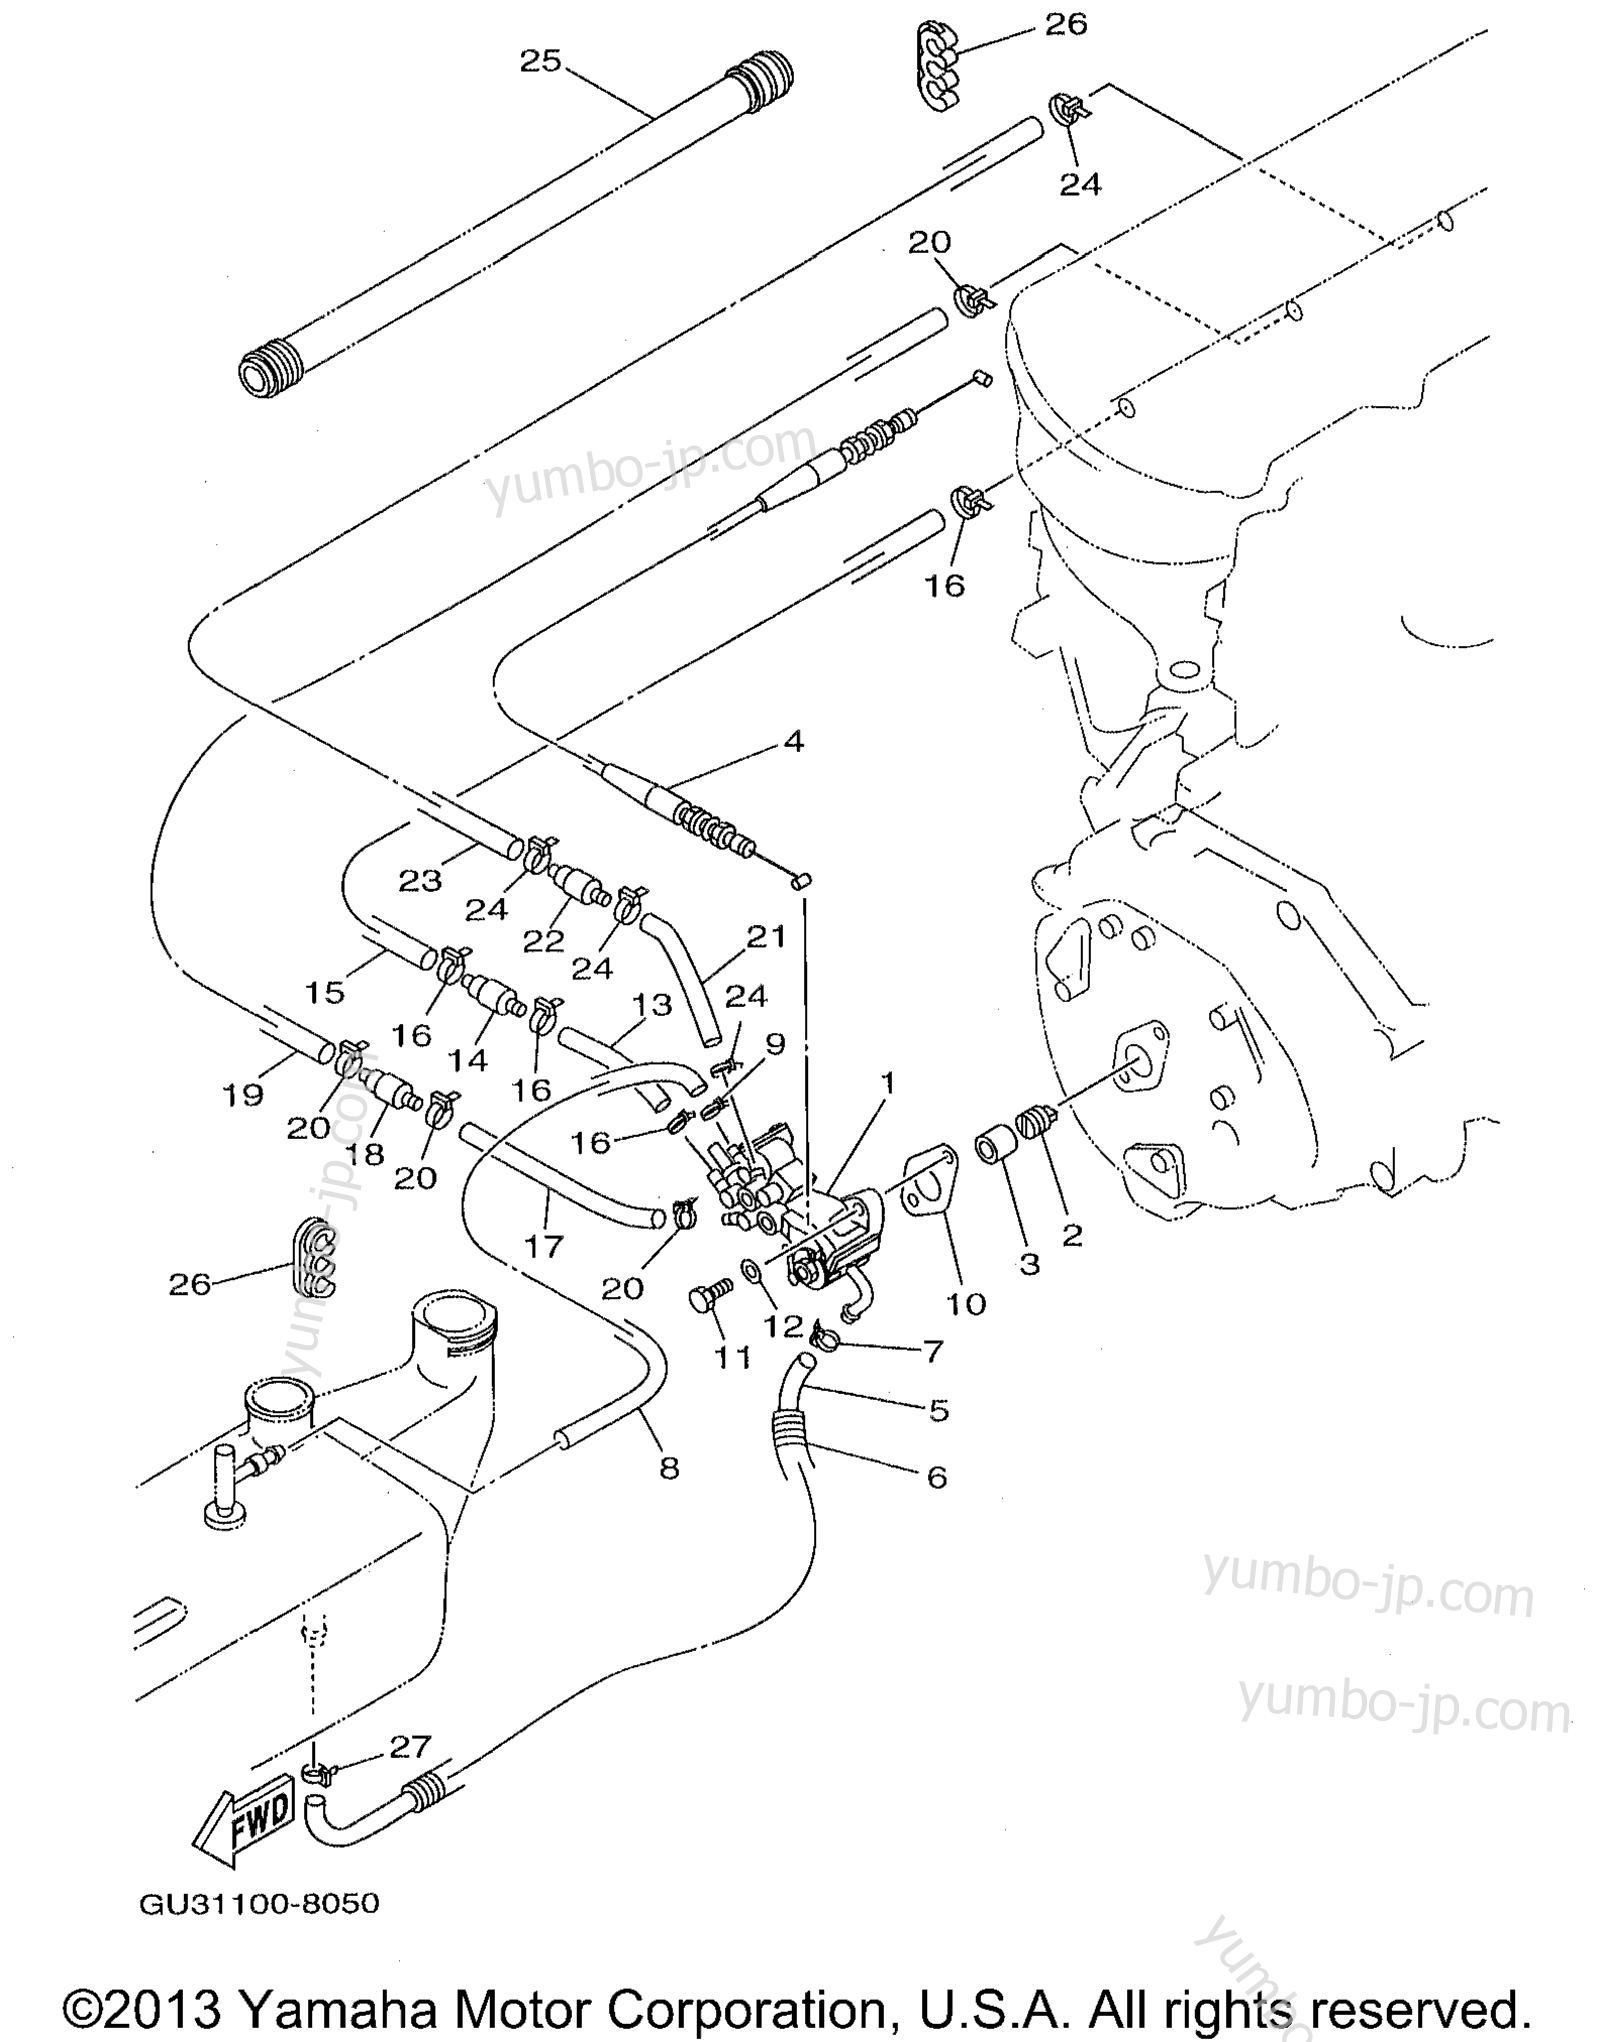 Масляный насос для гидроциклов YAMAHA WAVE RUNNER XL1200 (XL1200W) 1998 г.